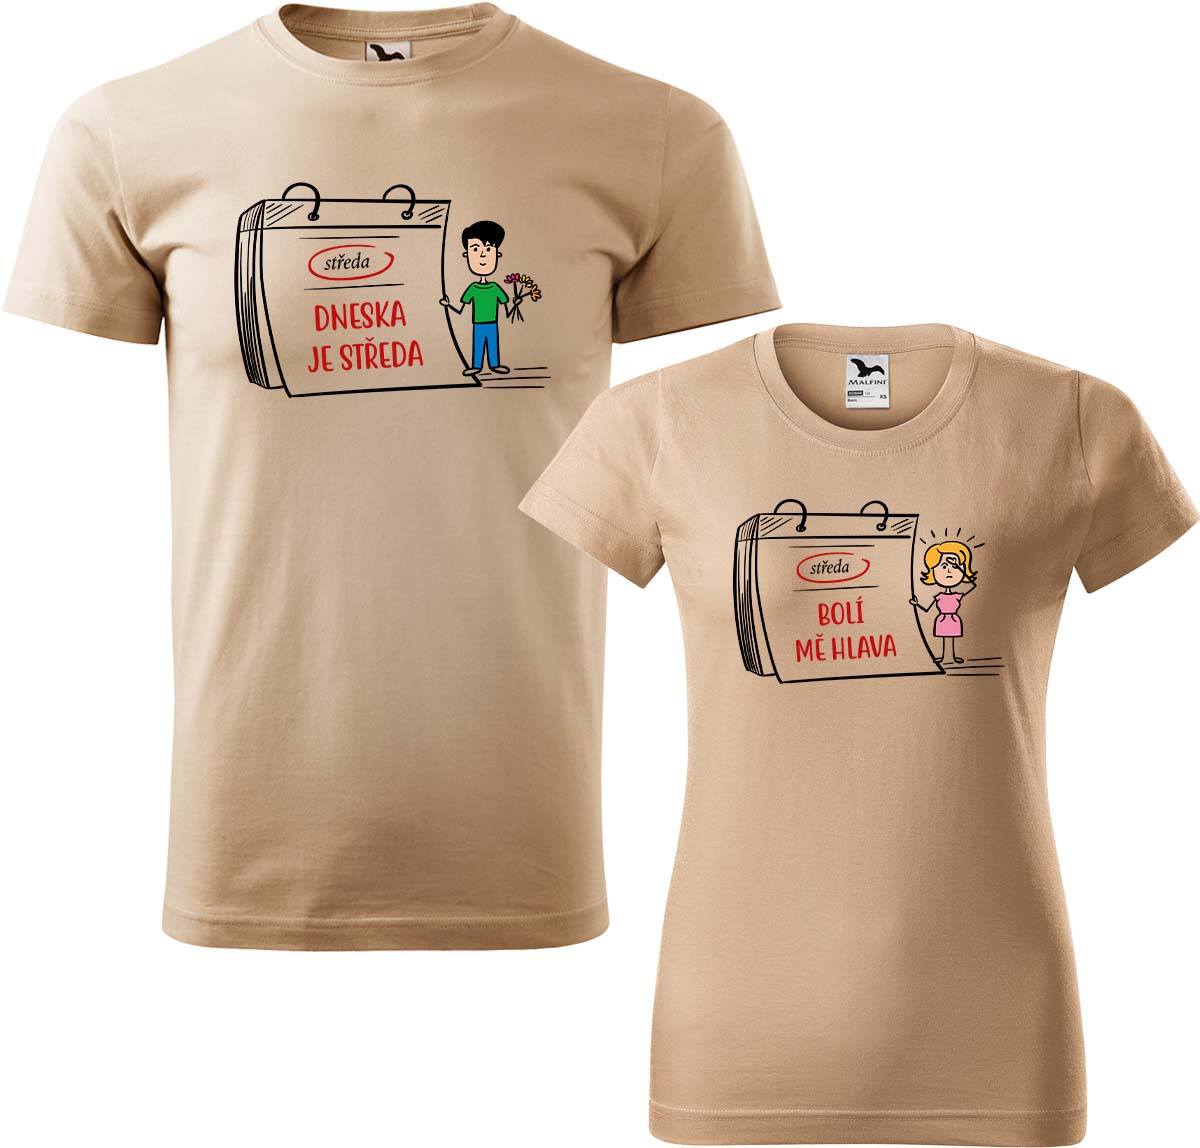 Trička pro páry - Dneska je středa Barva: Písková (08), Velikost dámské tričko: XL, Velikost pánské tričko: XL